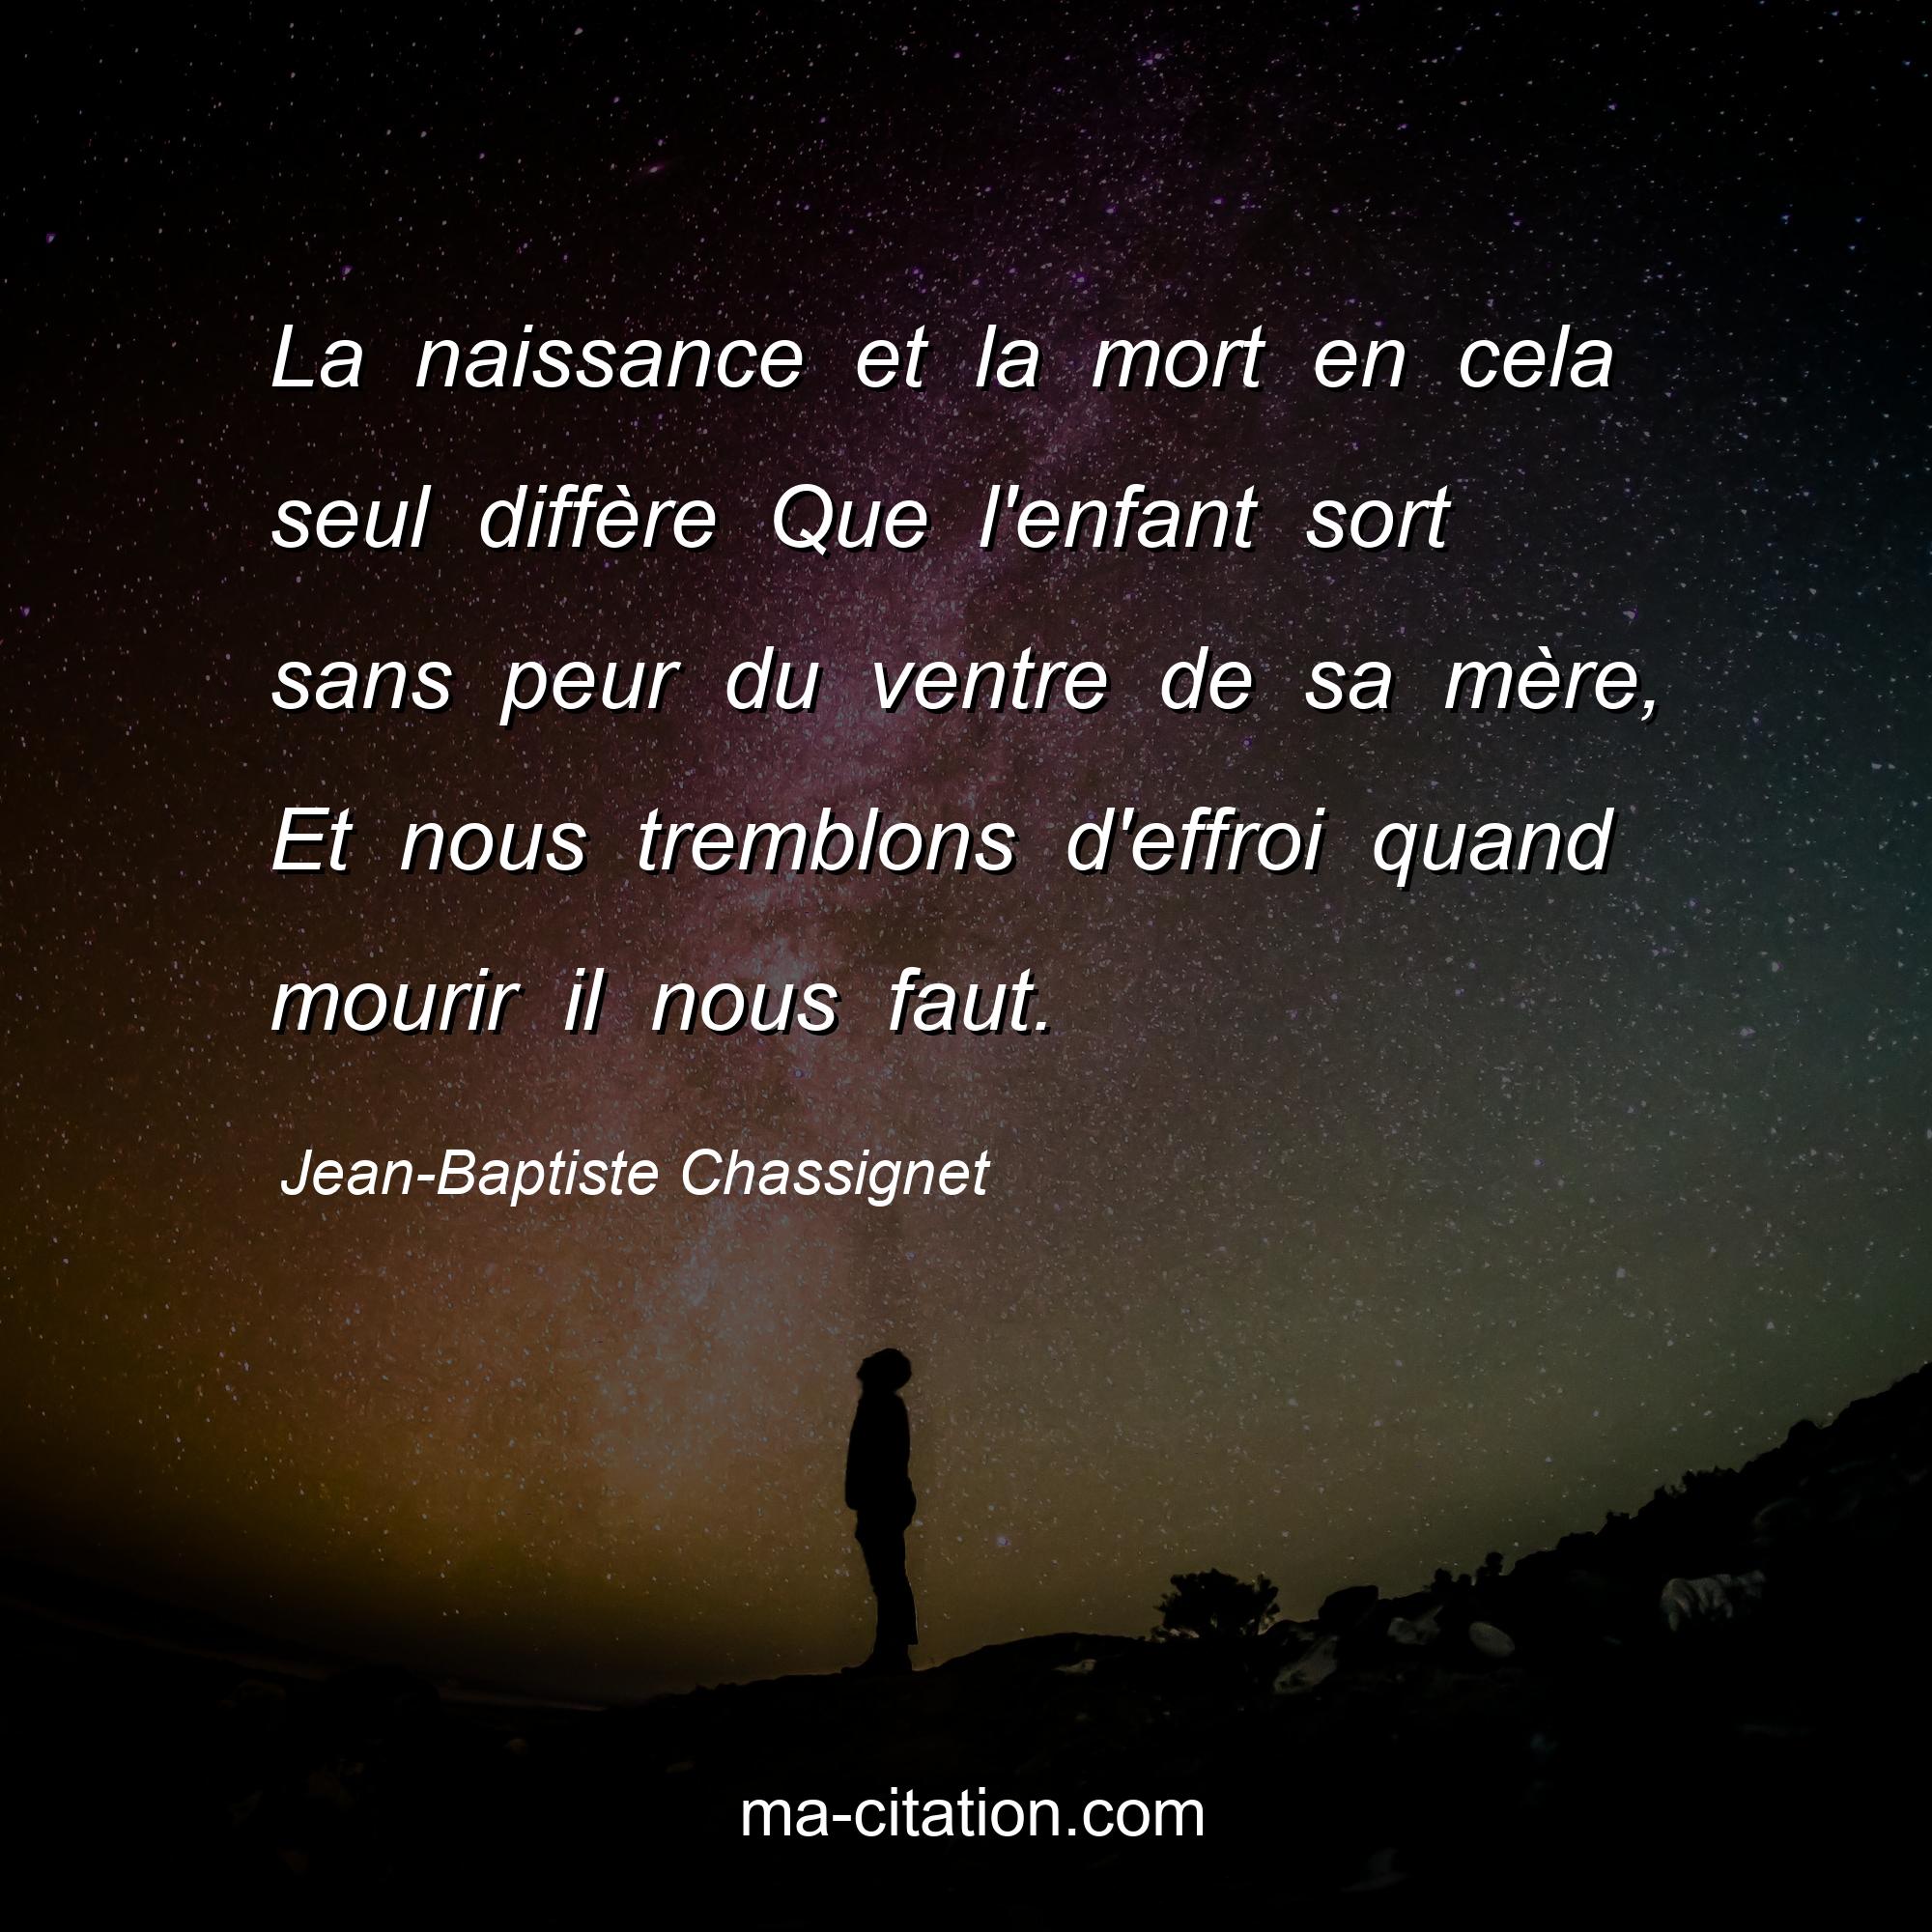 Jean-Baptiste Chassignet : La naissance et la mort en cela seul diffère Que l'enfant sort sans peur du ventre de sa mère, Et nous tremblons d'effroi quand mourir il nous faut.